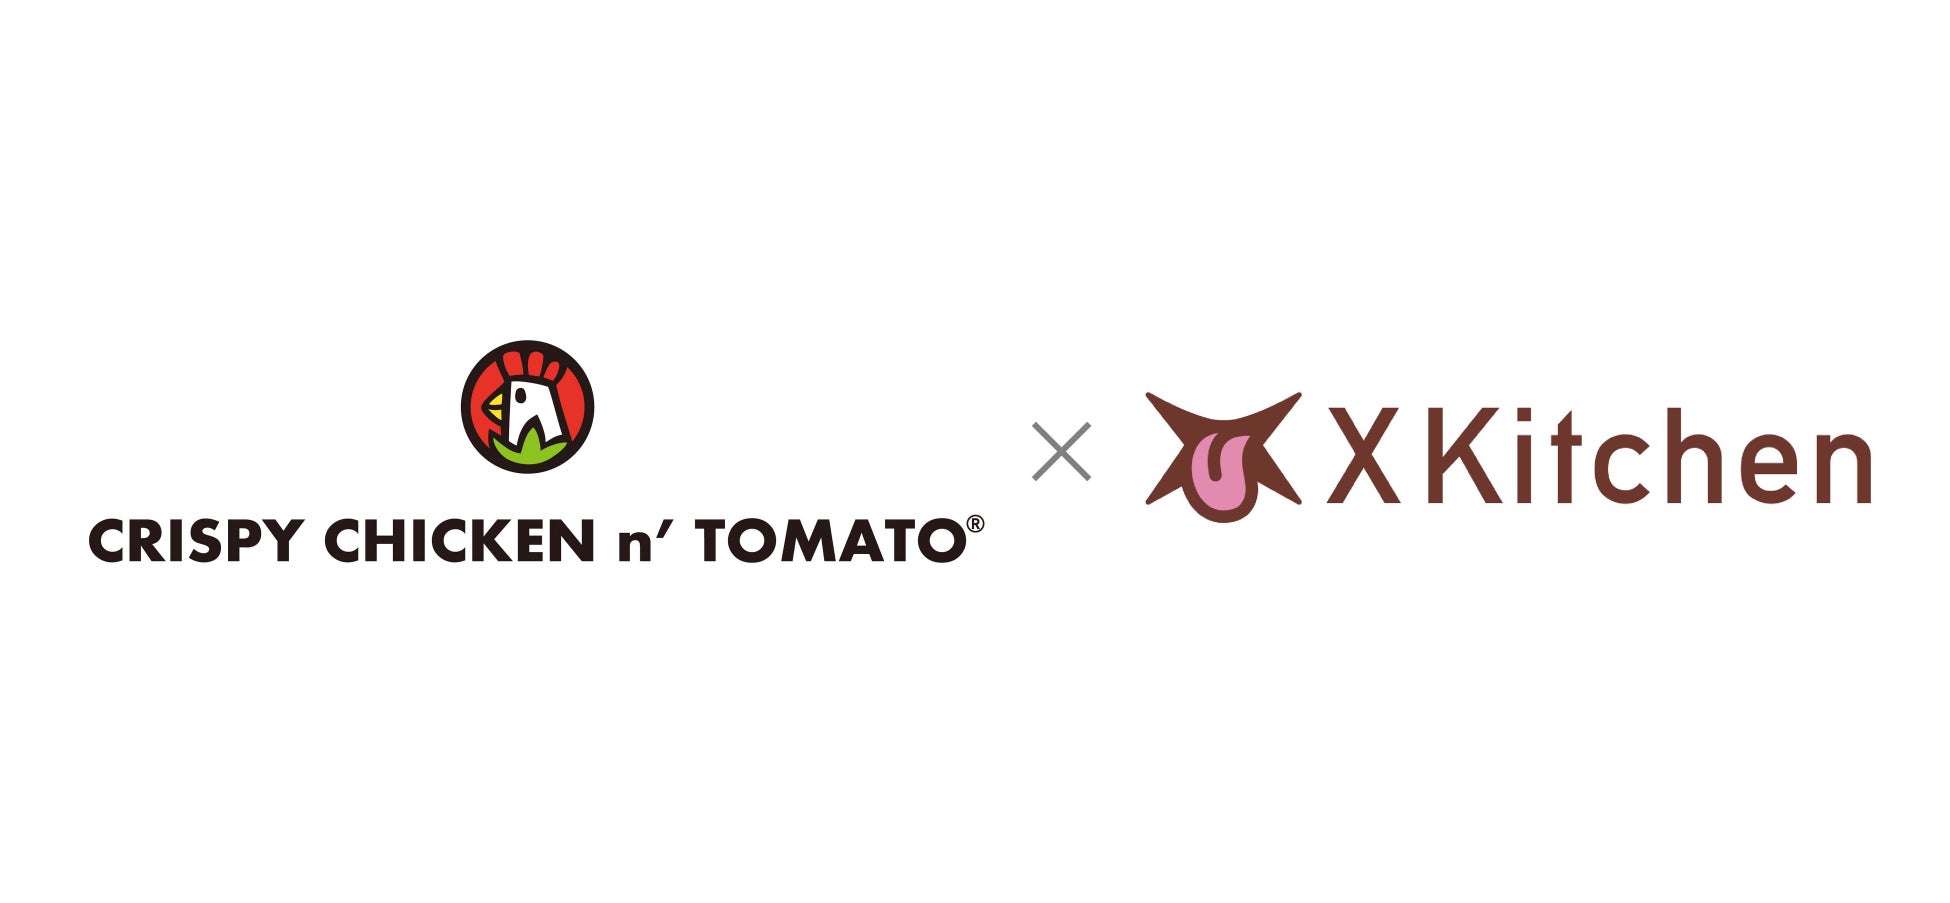 韓国チキン国内最大手ブランド『CRISPY CHICKEN n’ TOMATO®︎』がゴーストレストランFC『X Kitchen』とパートナーシップ契約を締結！本部向けプラットフォーム事業を開始！